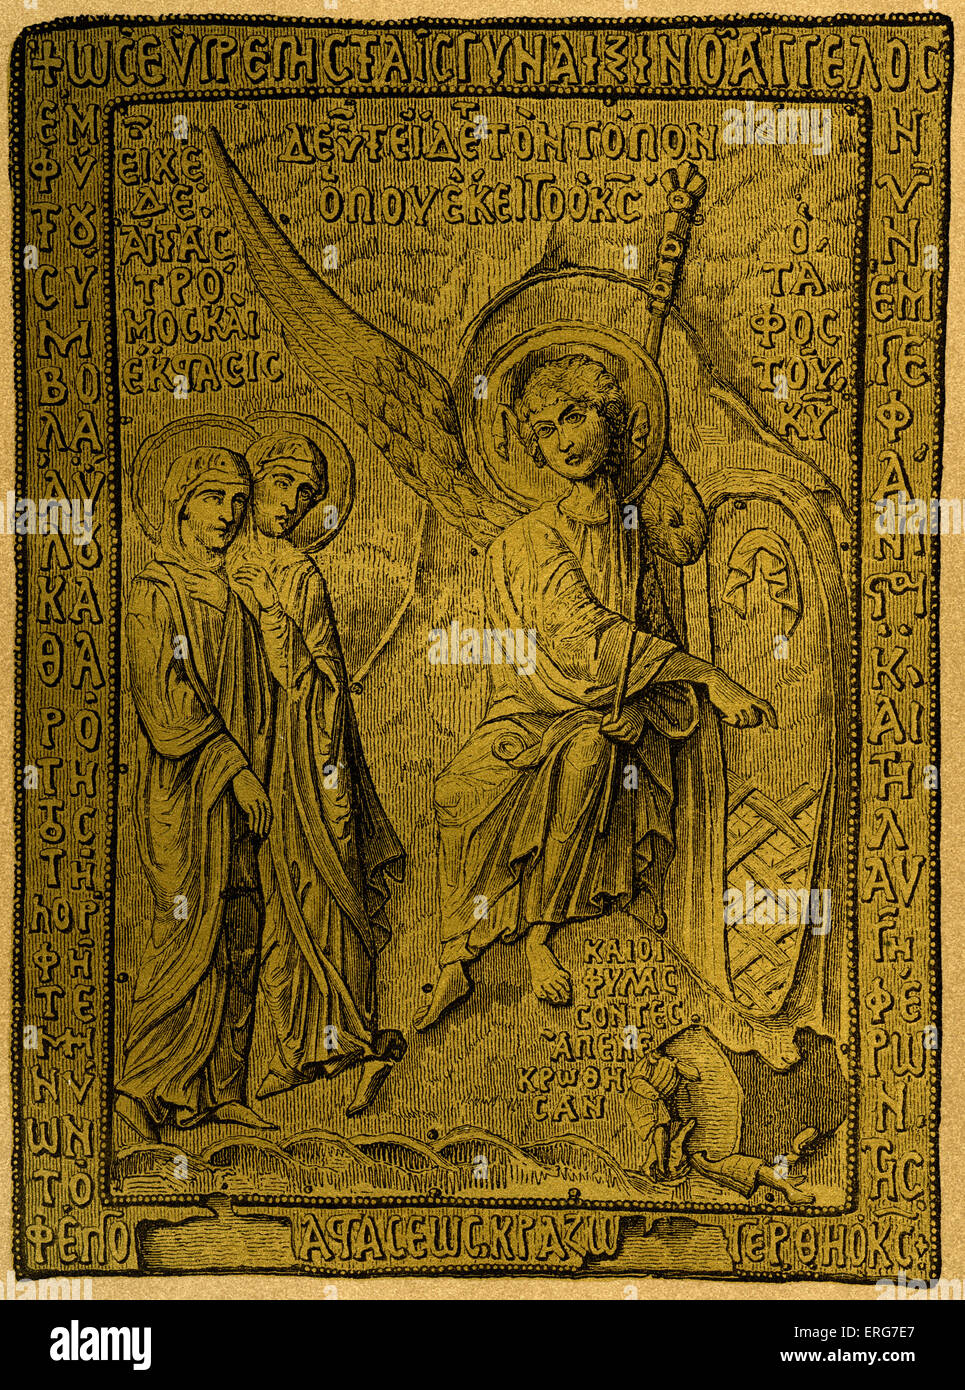 Bord de la couverture du livre du 9e siècle. Avec l'écriture grecque. Bas - relief en réponse de l'or. Banque D'Images